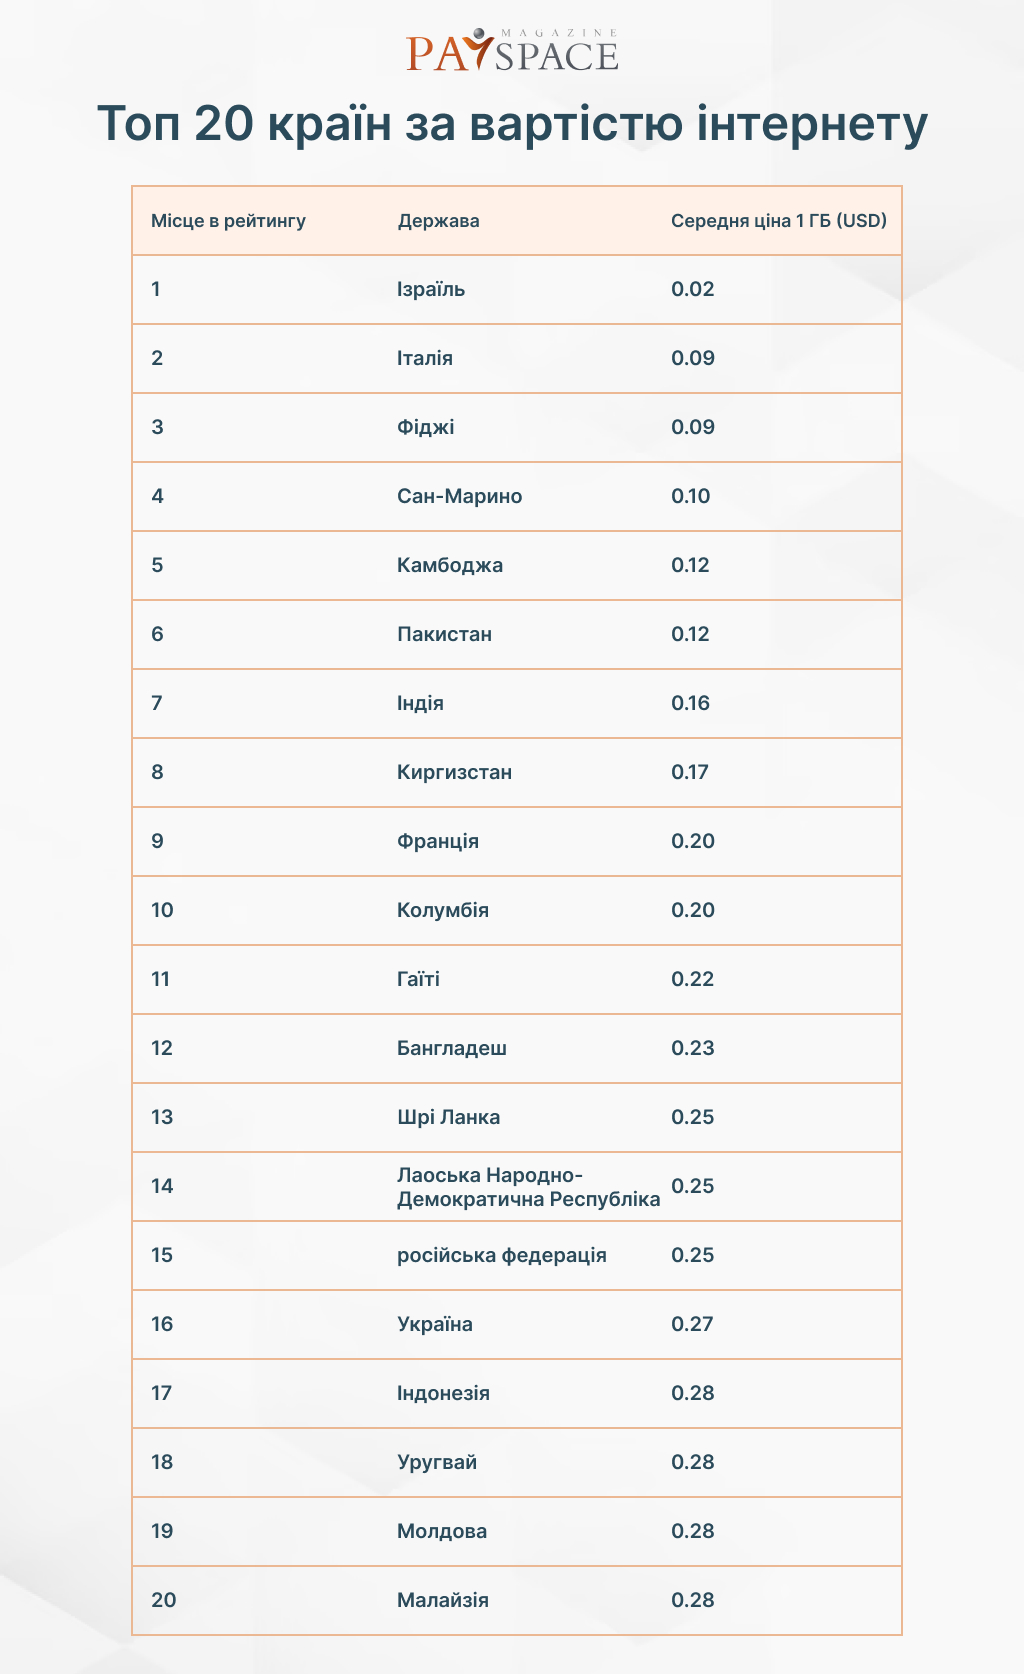 Топ-20 стран с самым дешевым интернетом